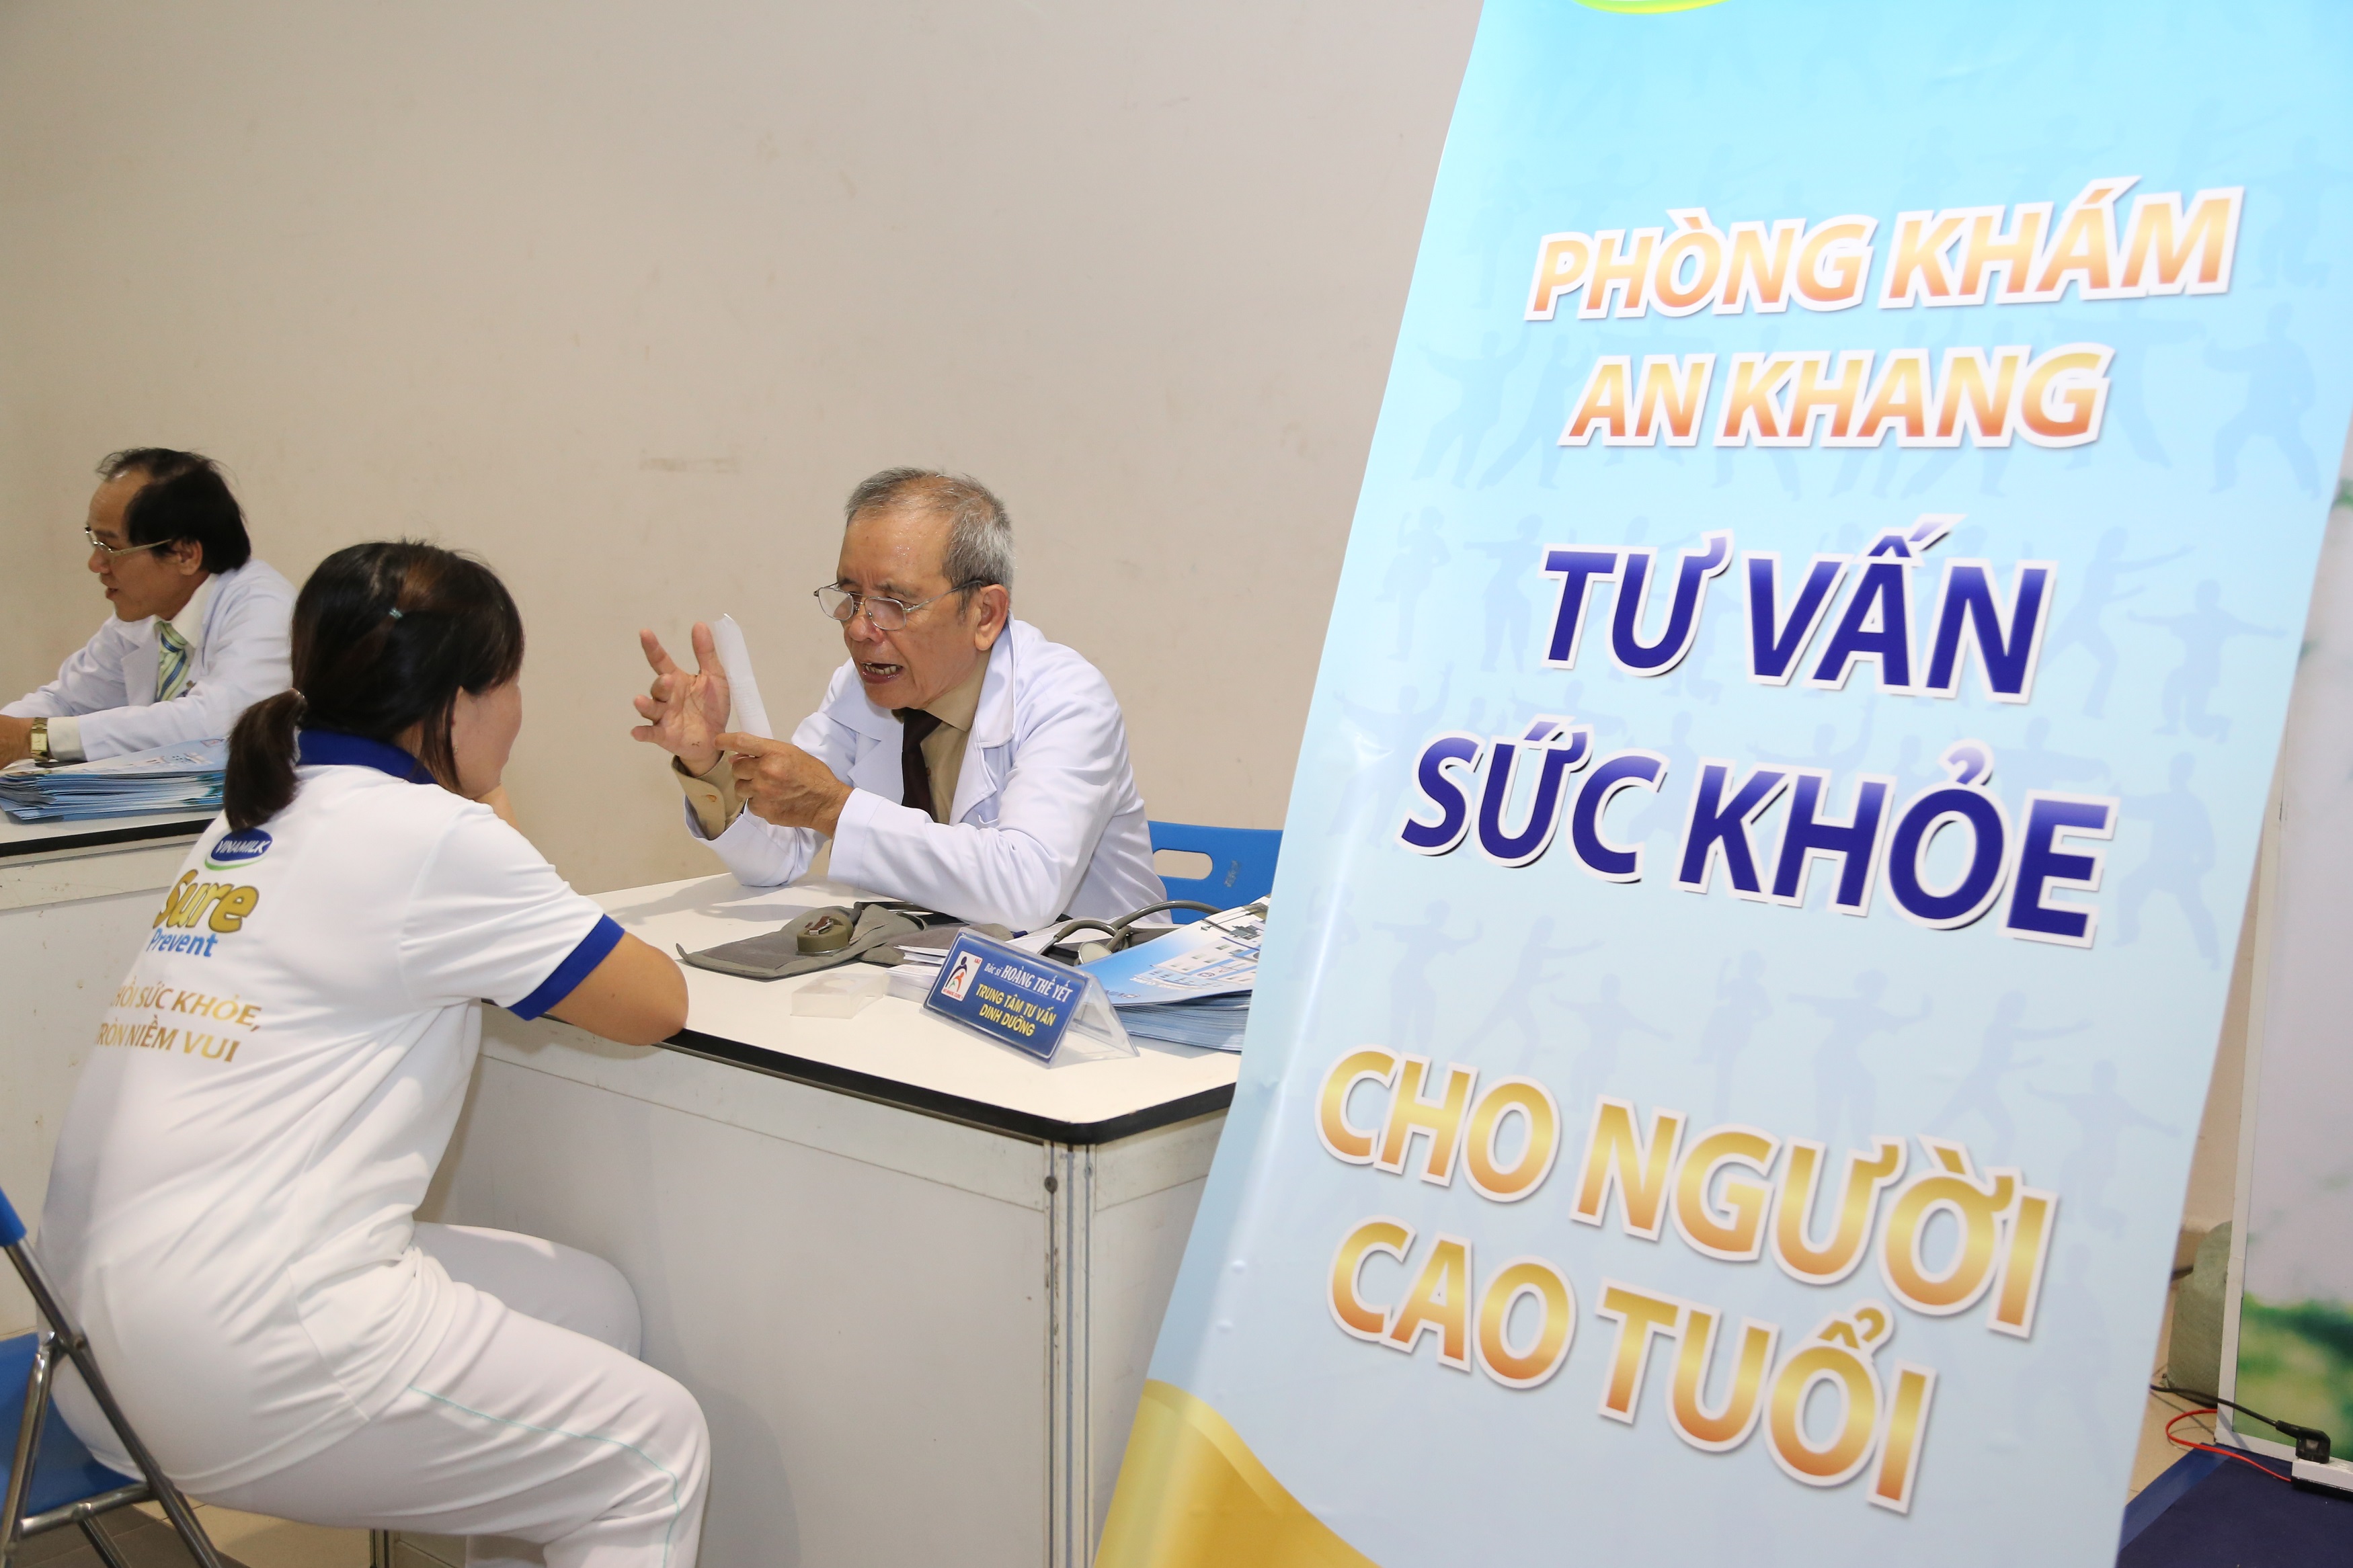 Các Bác sĩ chuyên khoa Phòng Khám An Khang tư vấn chăm sóc sức khỏe cho người cao tuổi tham gia chương trình